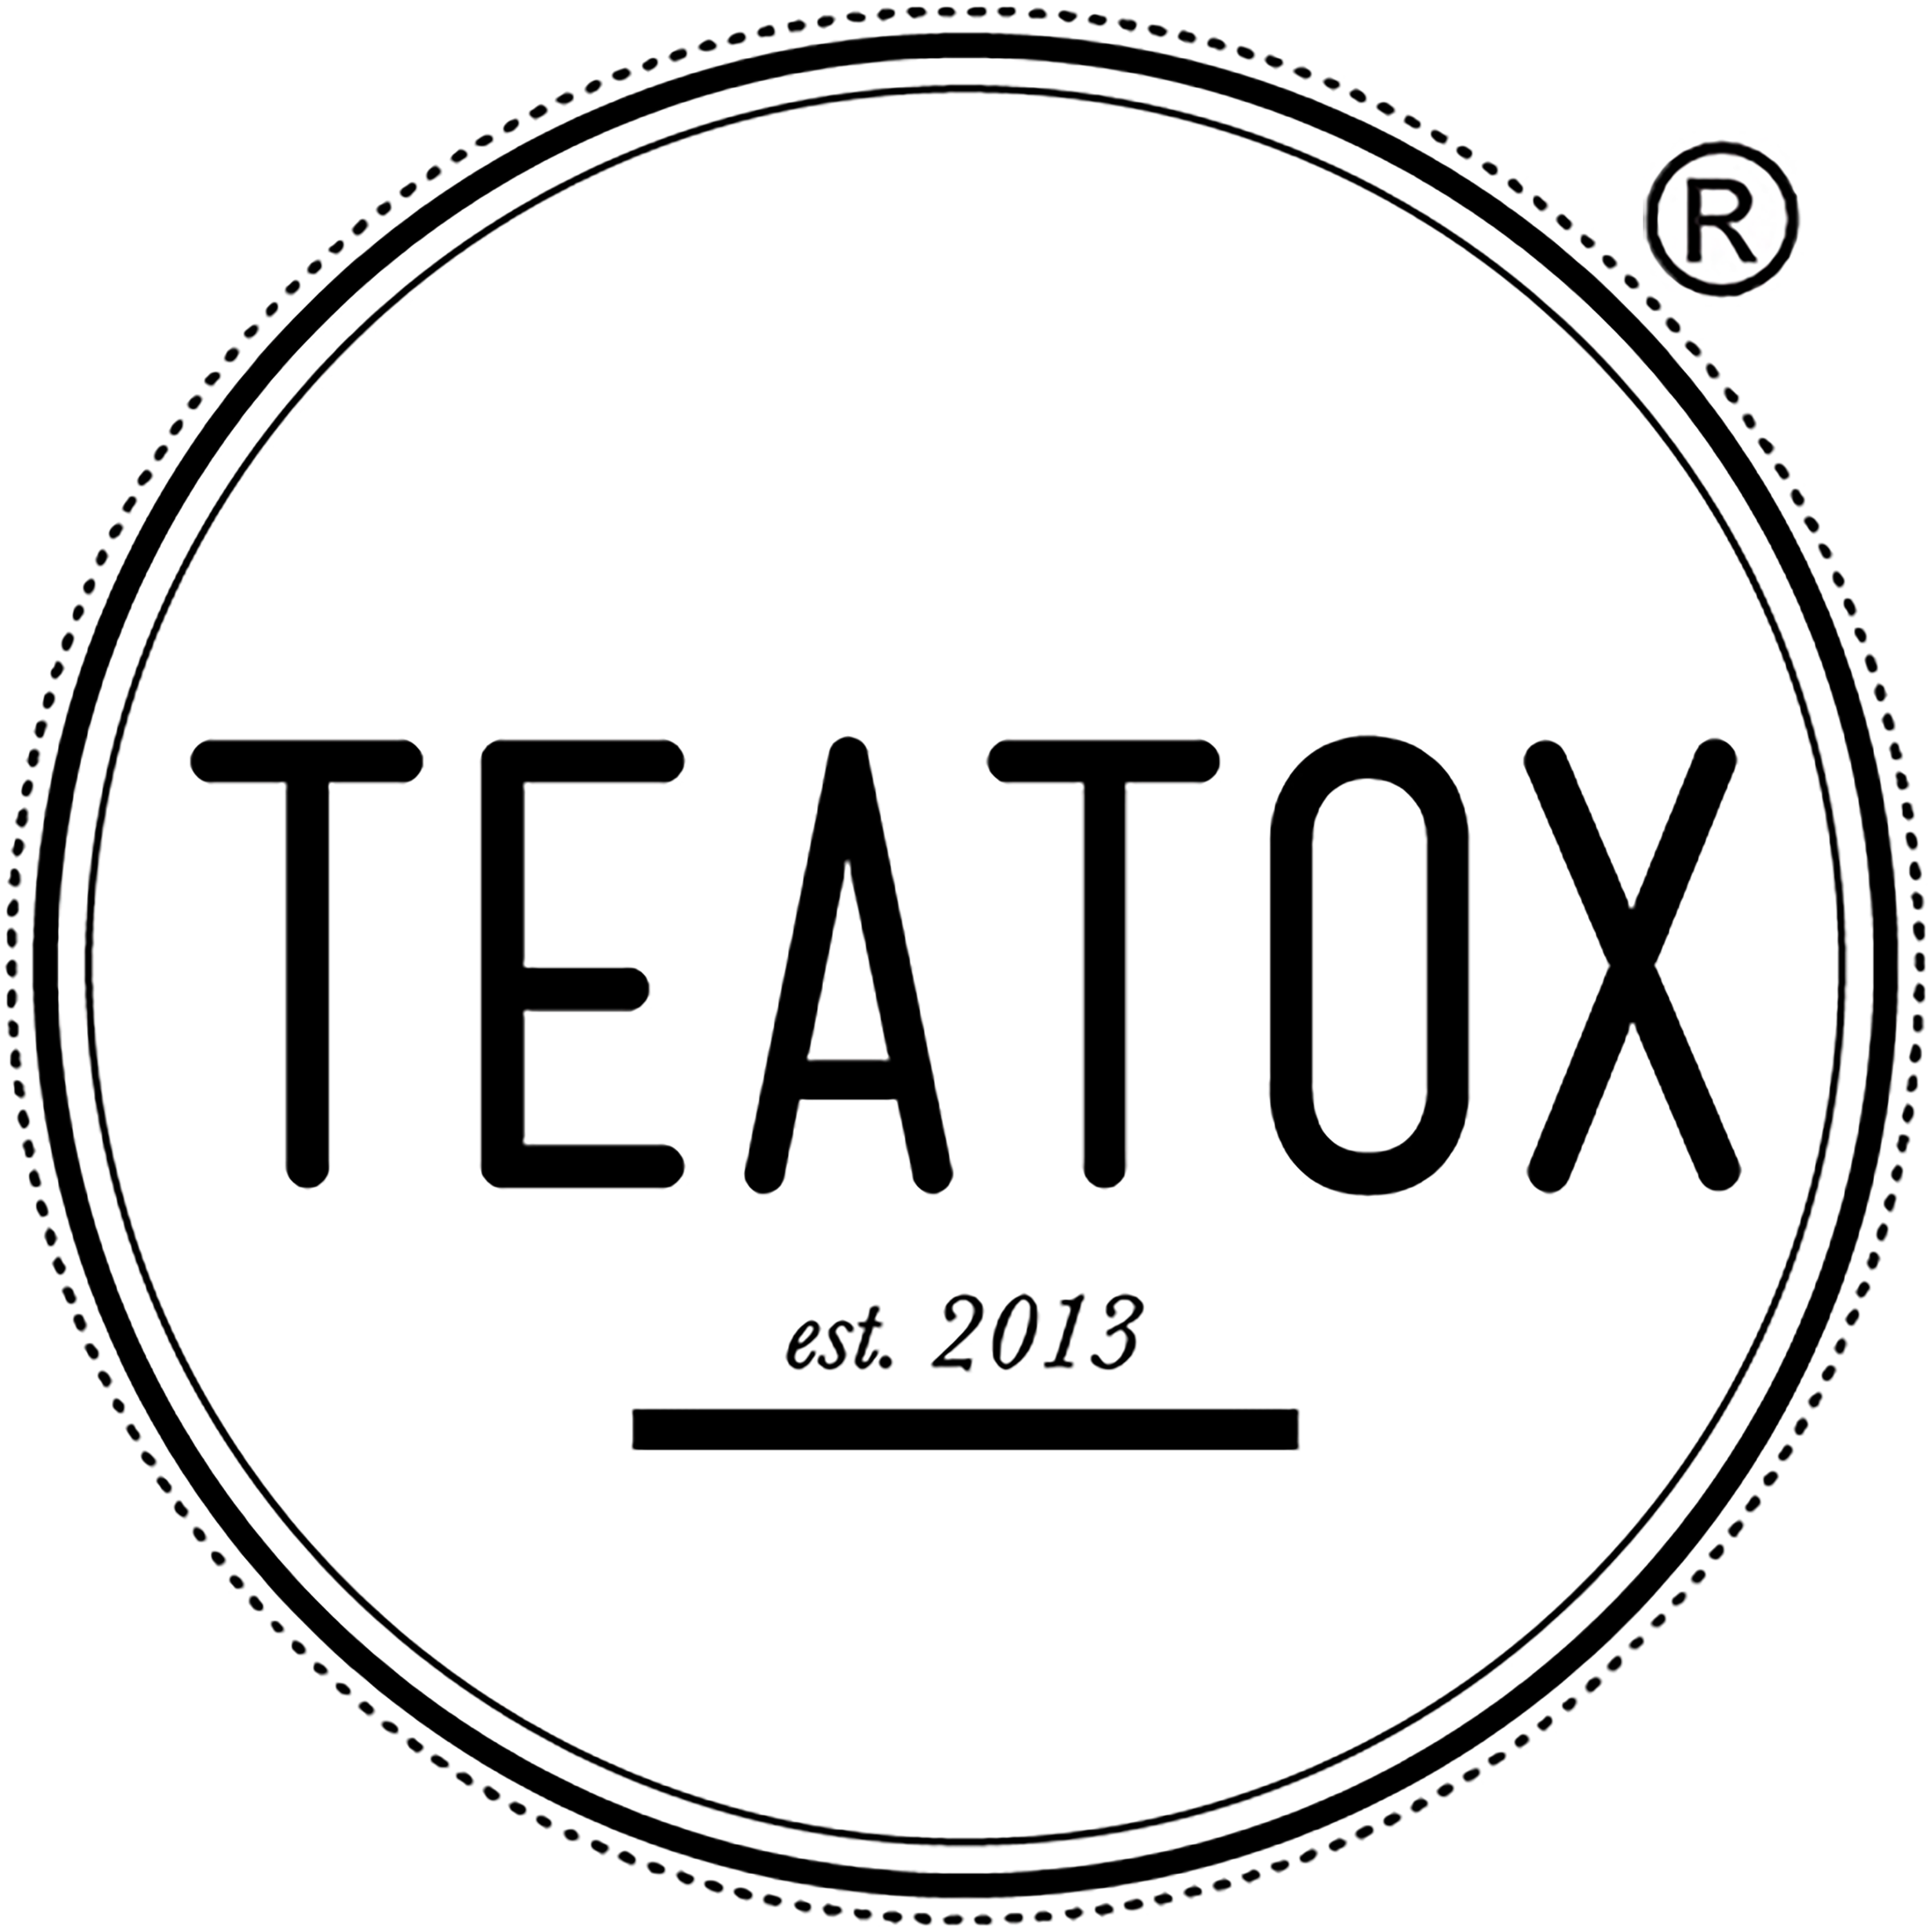 (c) Teatox.de